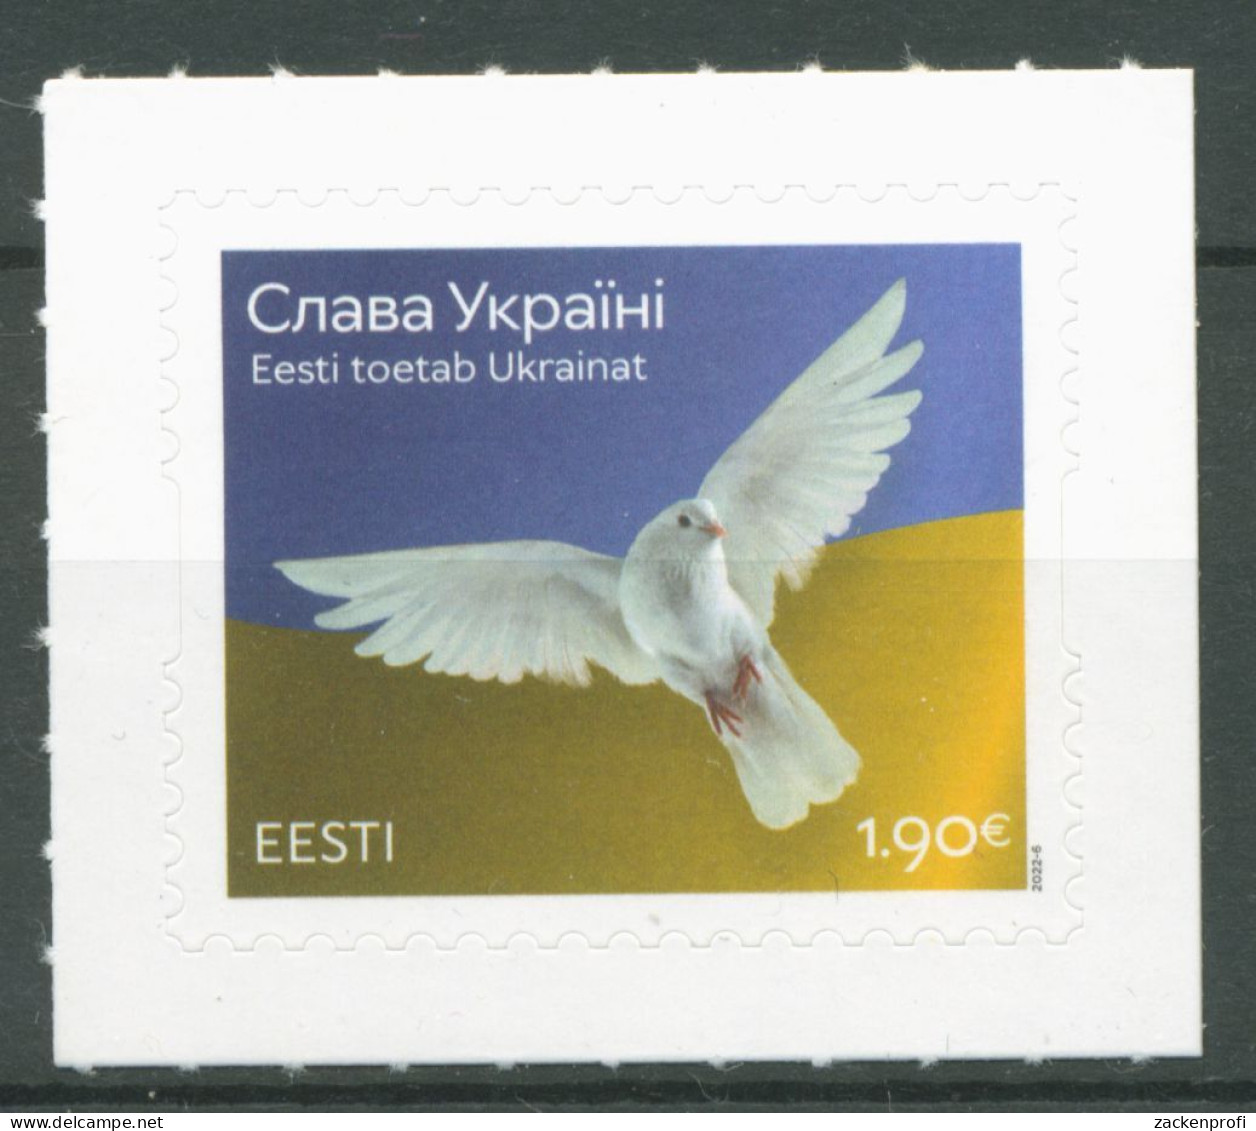 Estland 2022 Solidarität Mit Ukraine Friedenstaube 1037 Postfrisch - Estonia